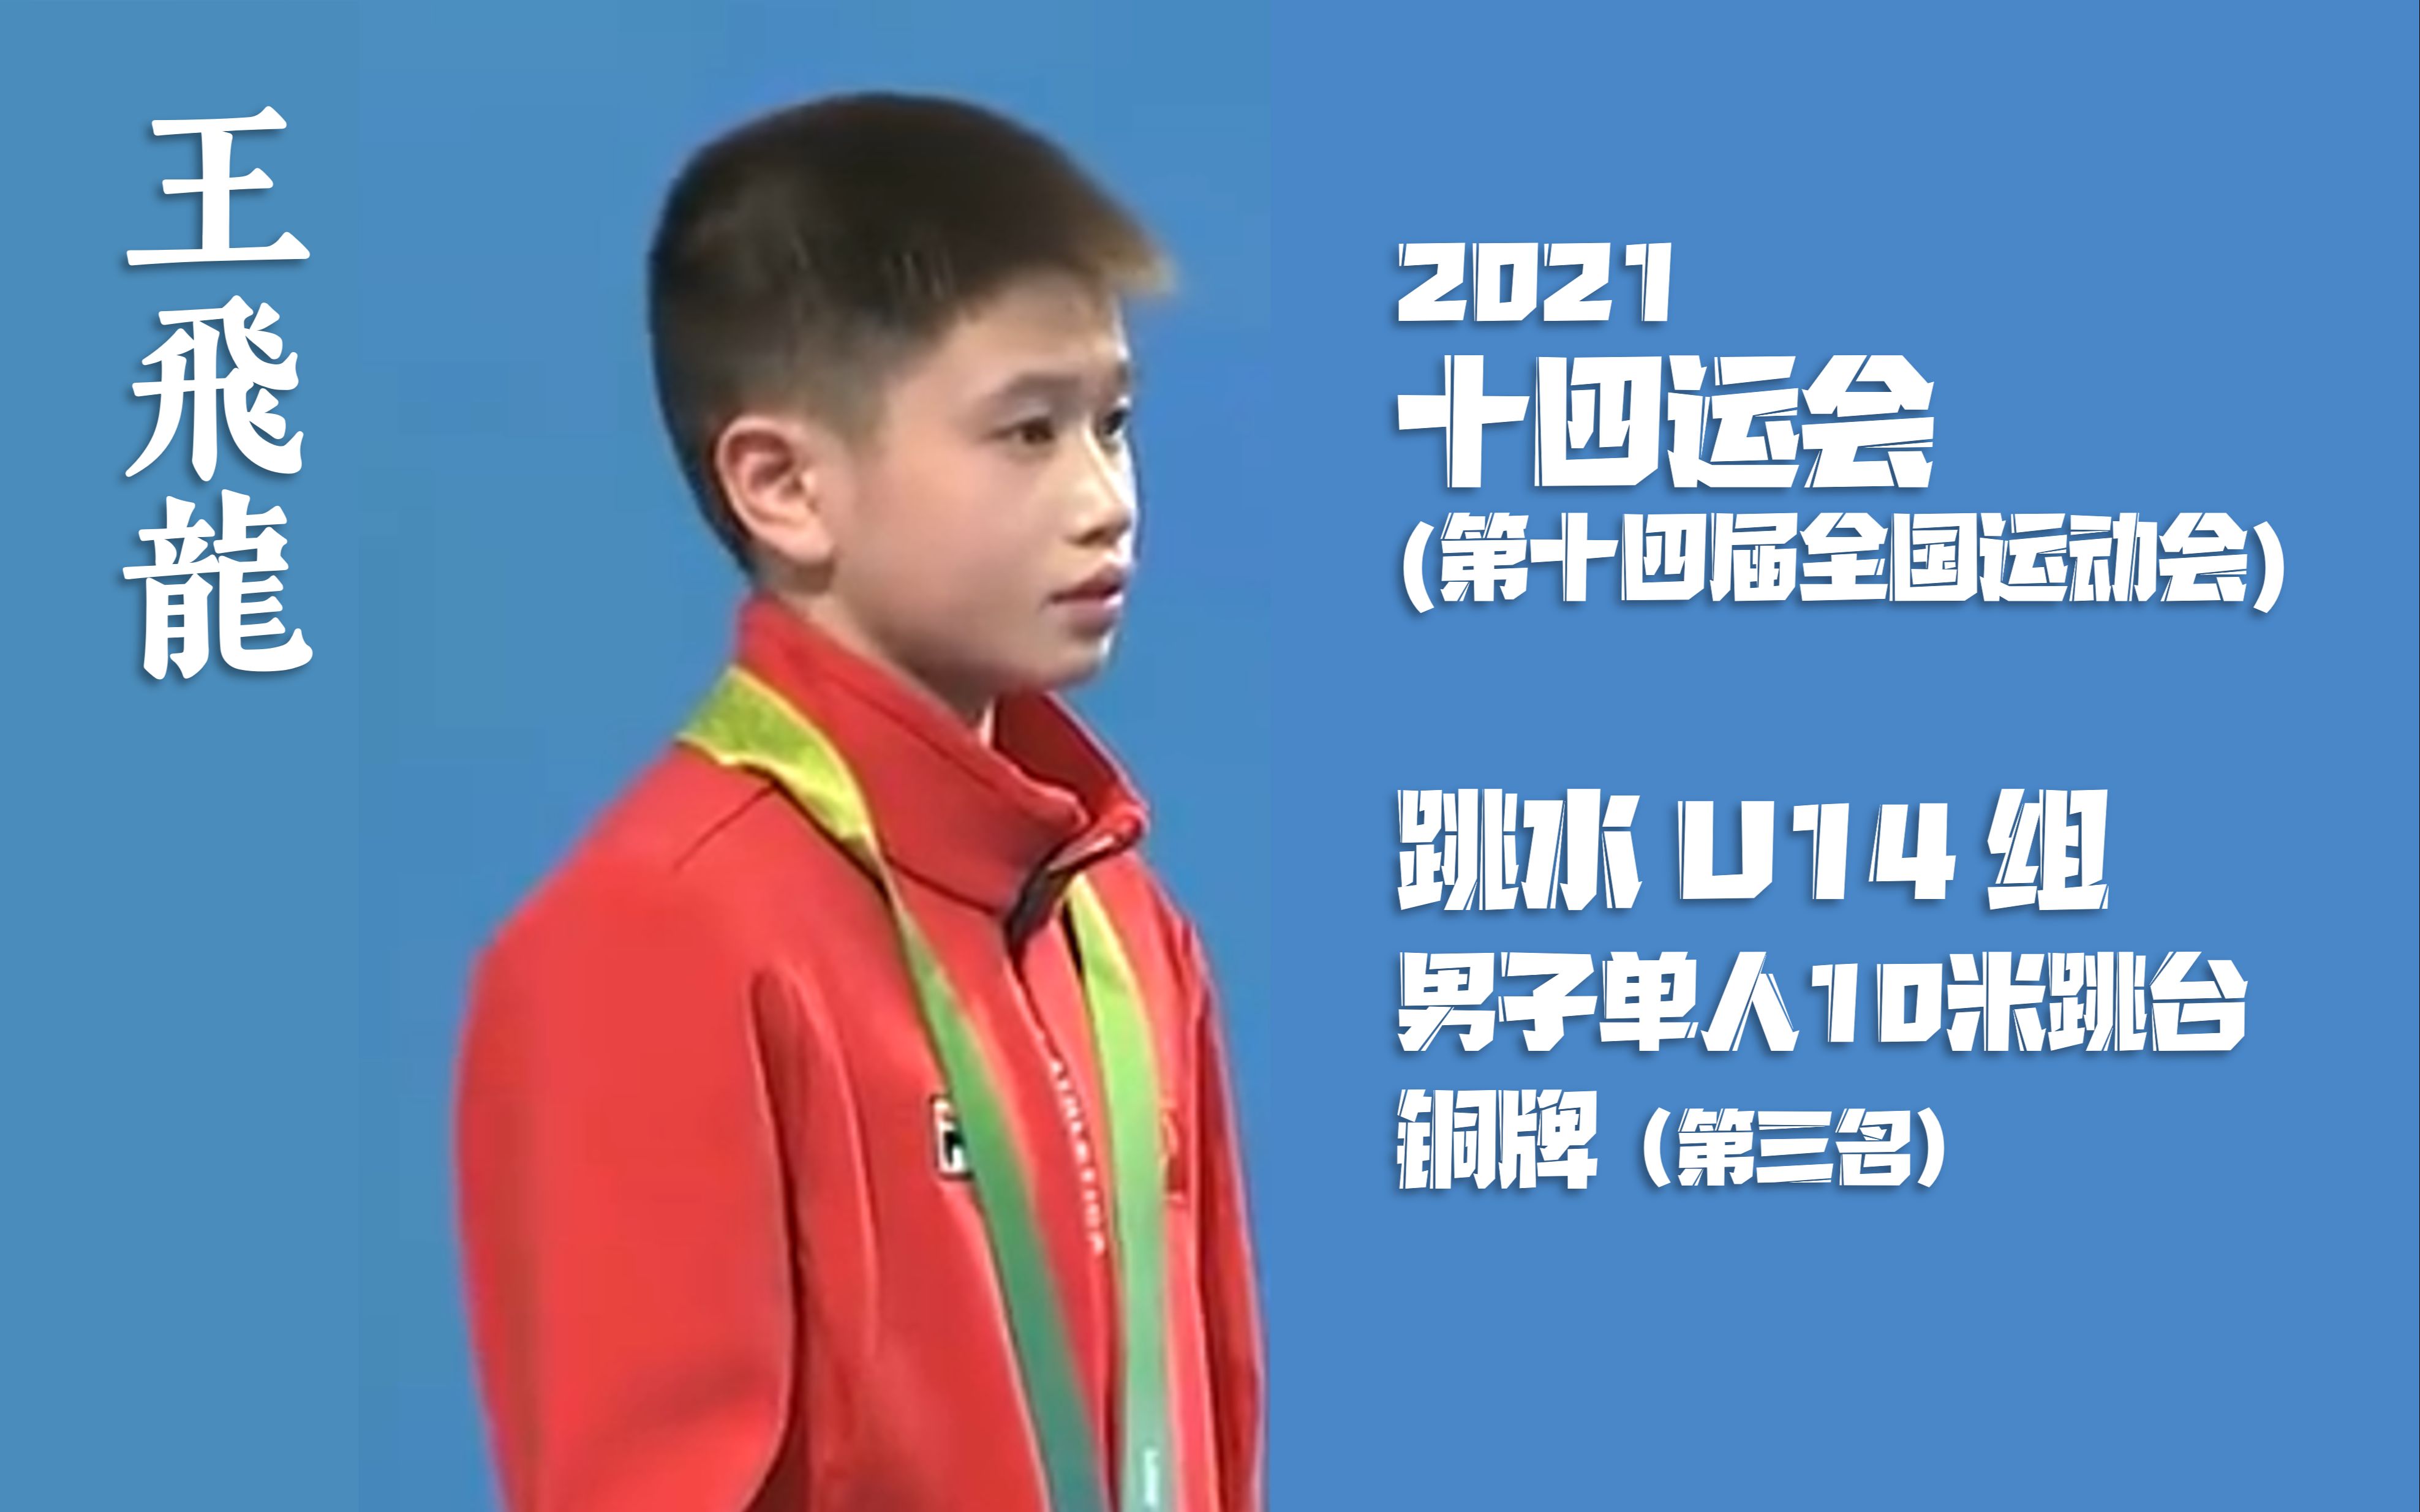 【王飞龙】2021年全运会跳水青年组(u14组)男子单人10米跳台决赛上的